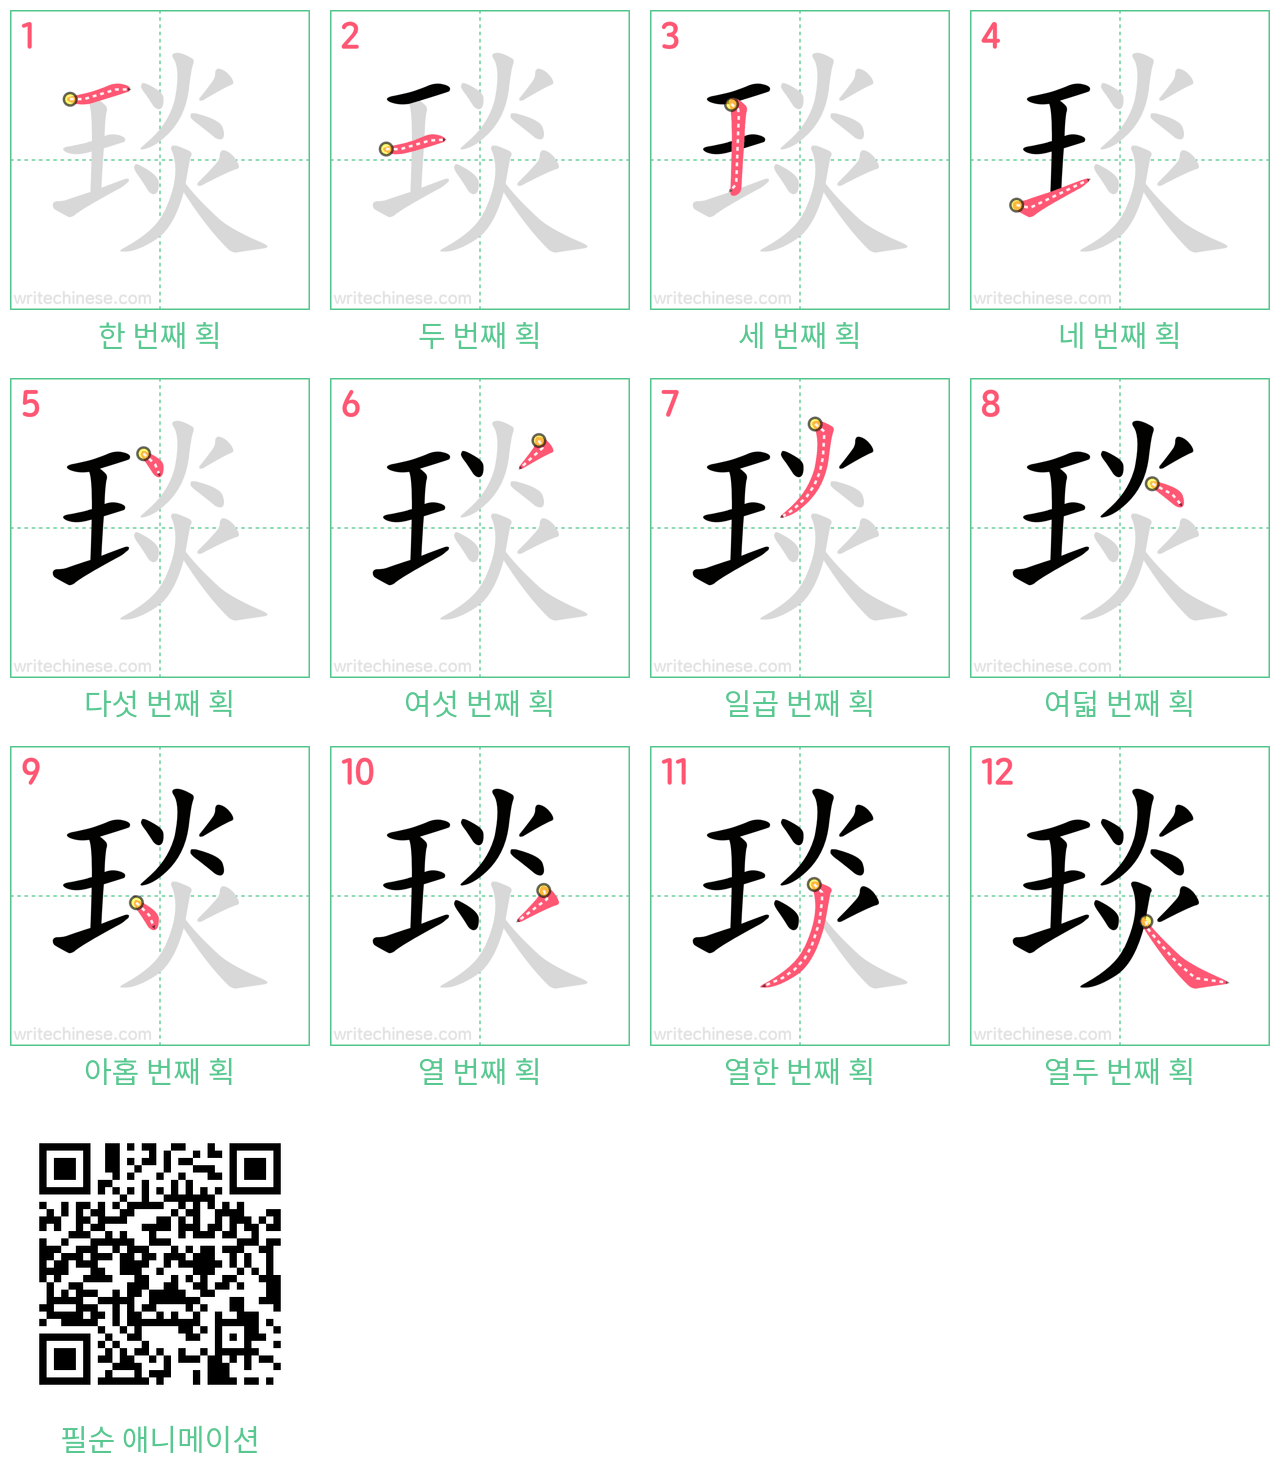 琰 step-by-step stroke order diagrams